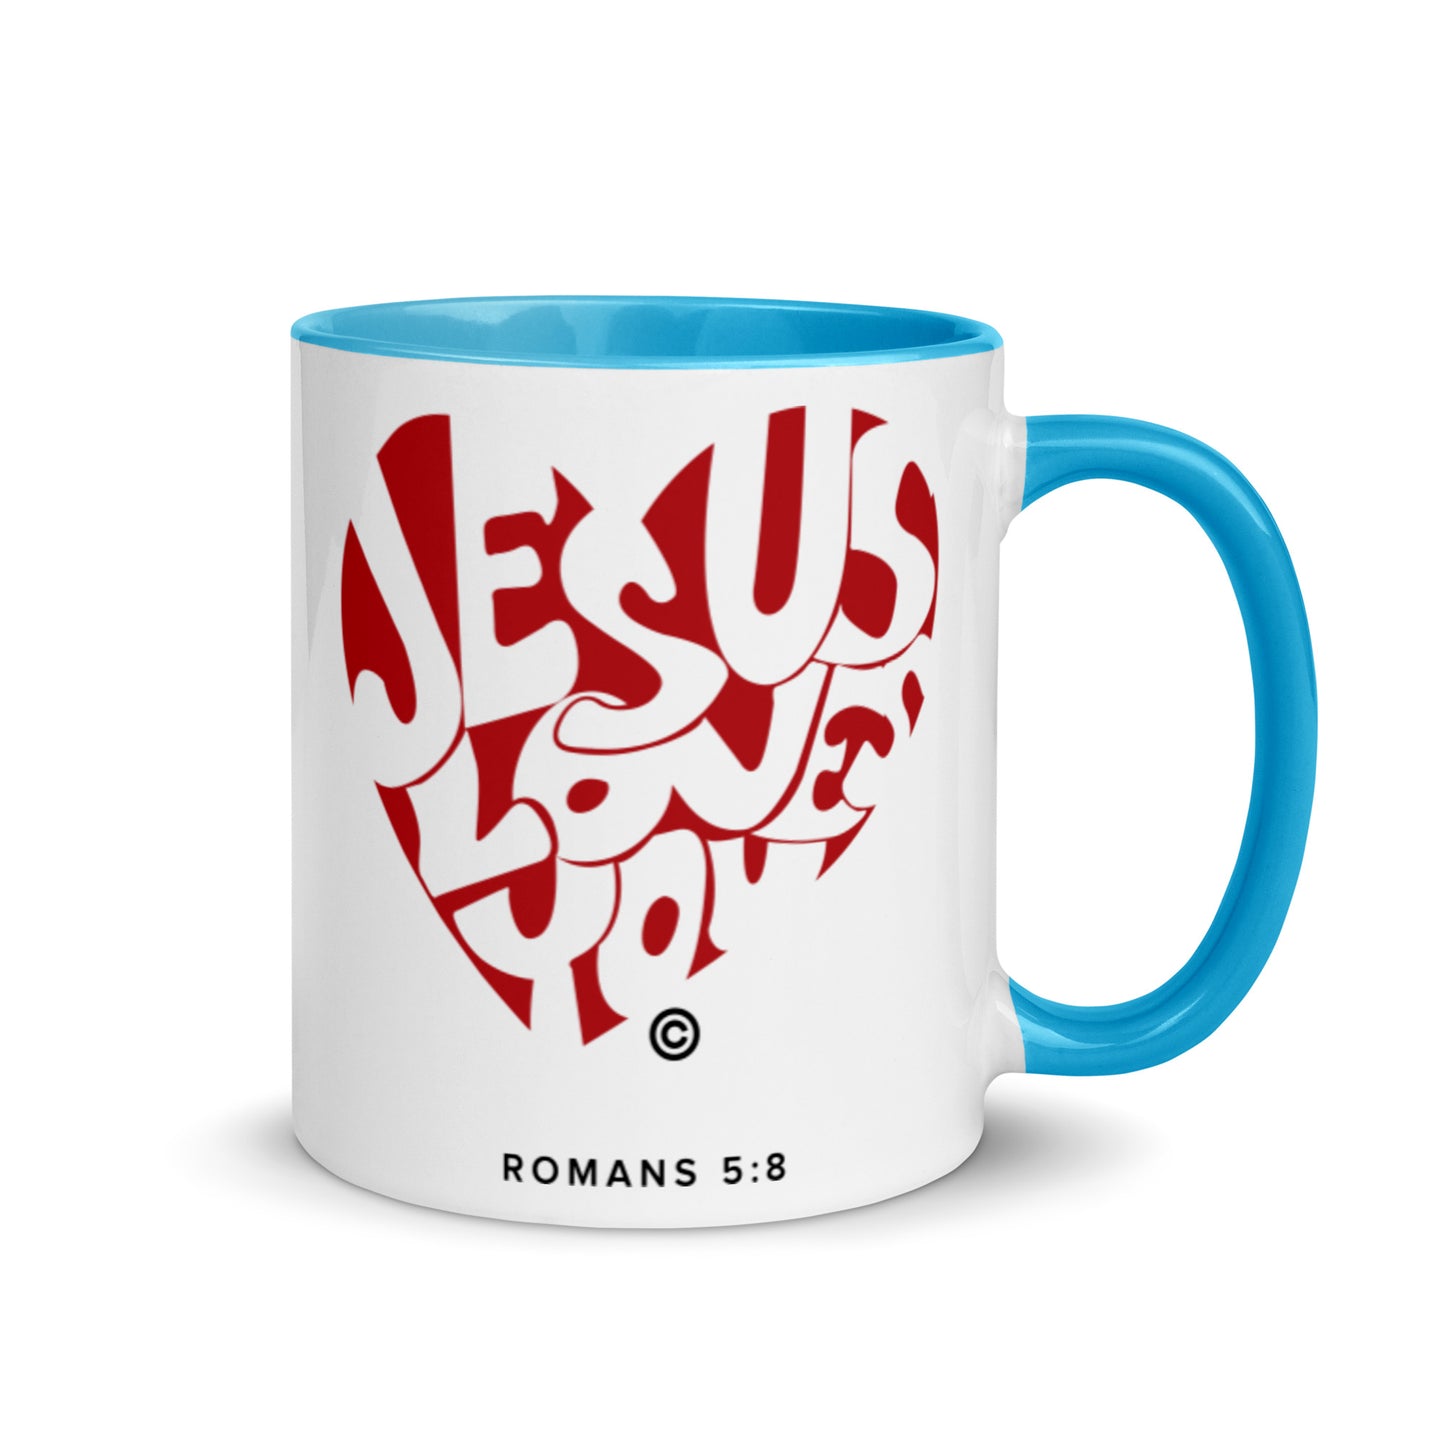 Jesus Loves You Mug with Color Inside